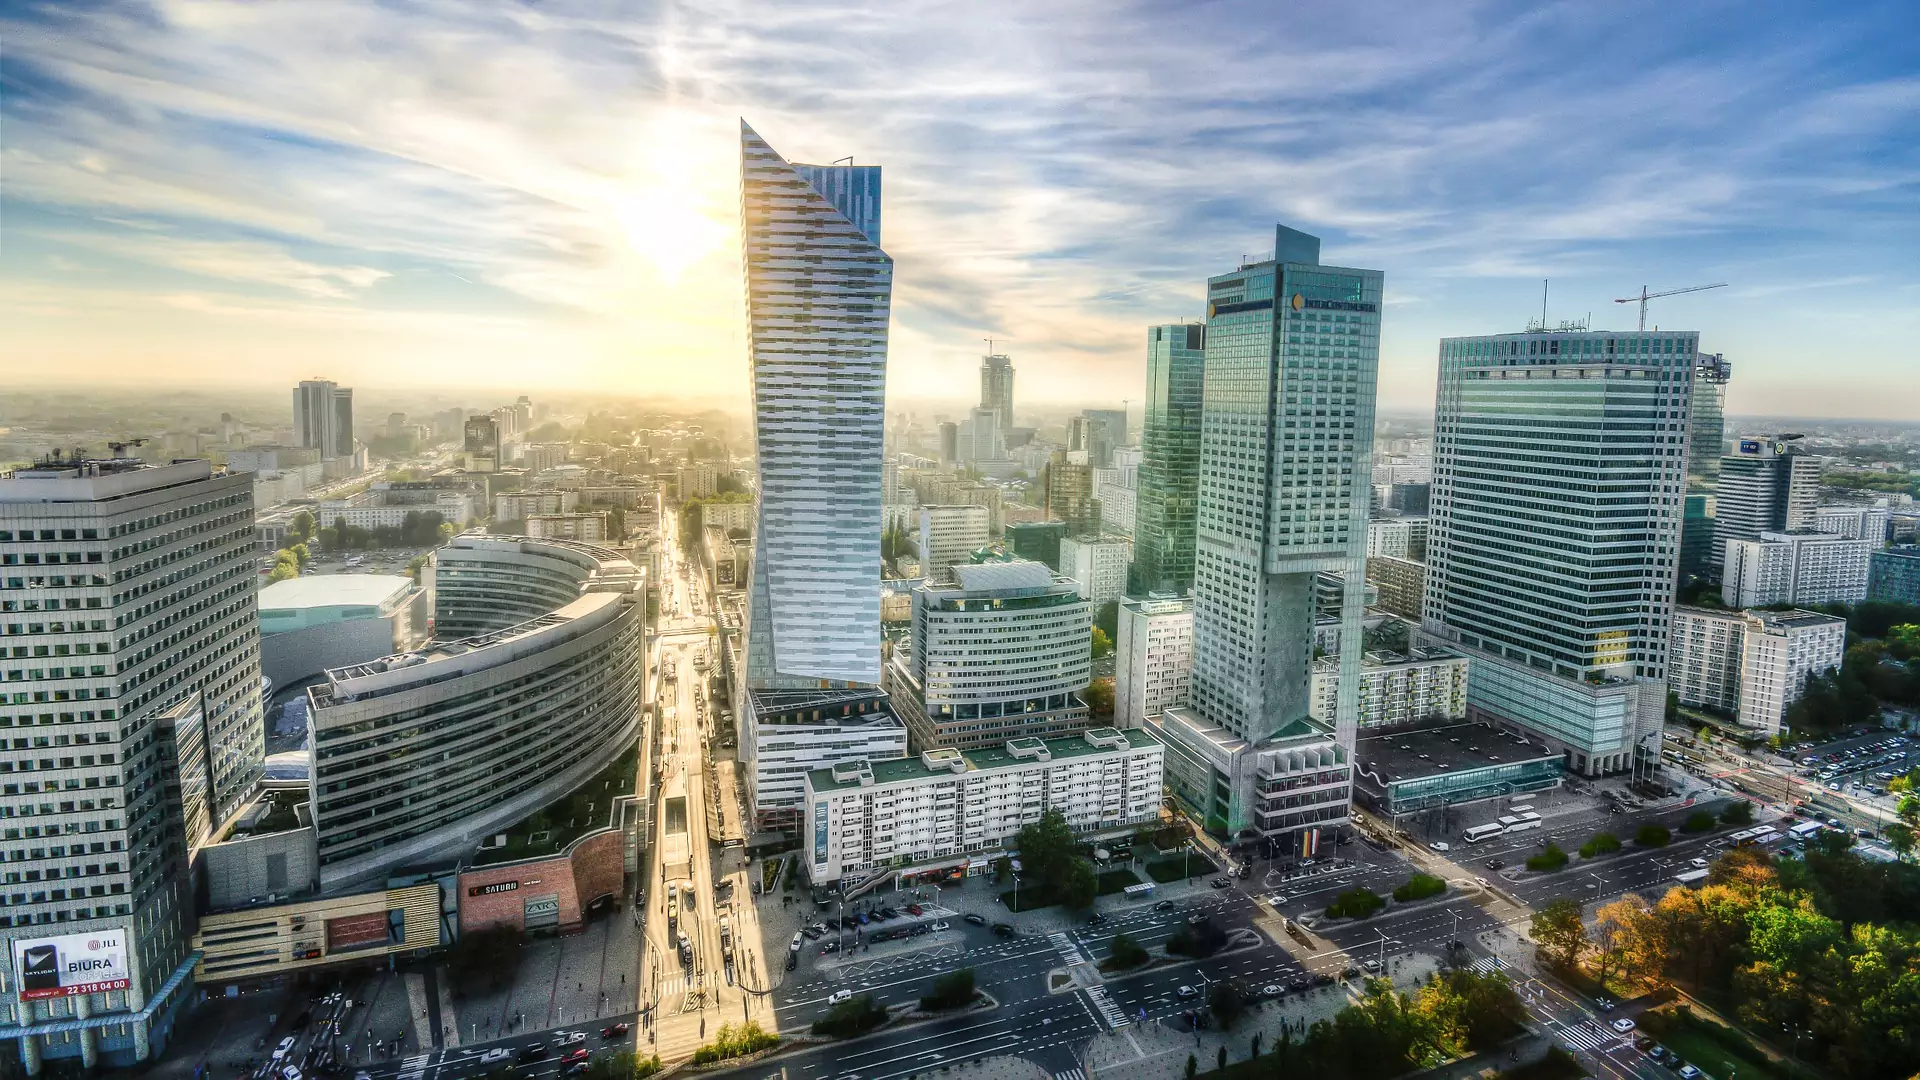 Projekt PiS całkowicie zmieni Warszawę. Chodzi o rozwój miasta czy przejęcie władzy?